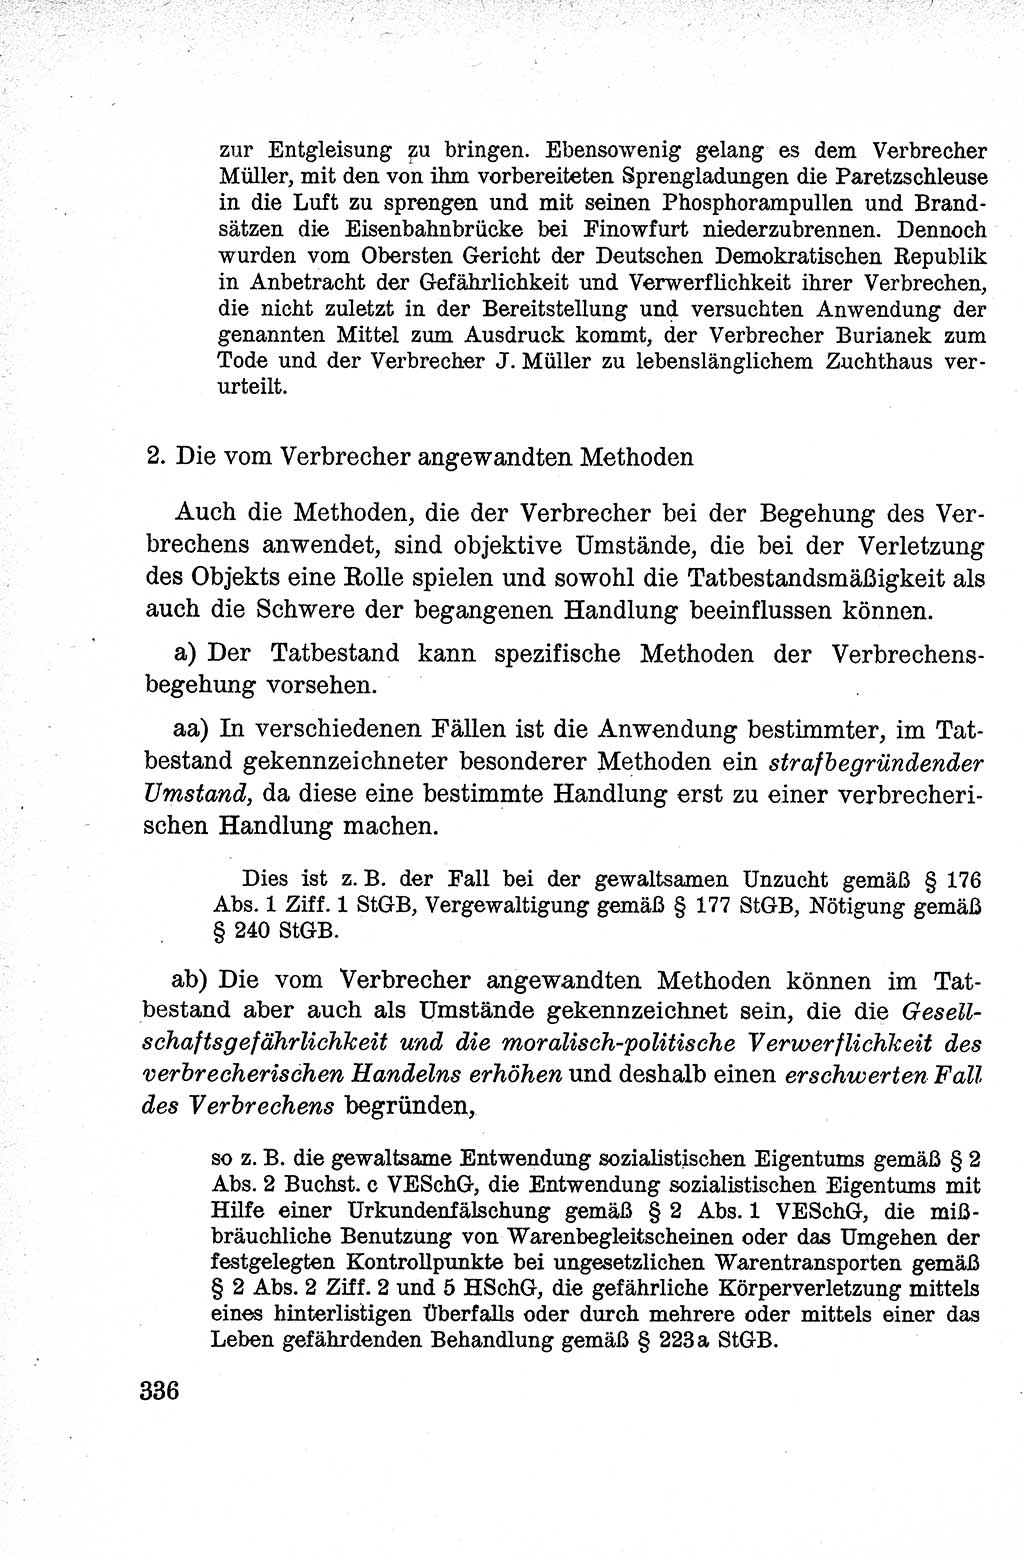 Lehrbuch des Strafrechts der Deutschen Demokratischen Republik (DDR), Allgemeiner Teil 1959, Seite 336 (Lb. Strafr. DDR AT 1959, S. 336)